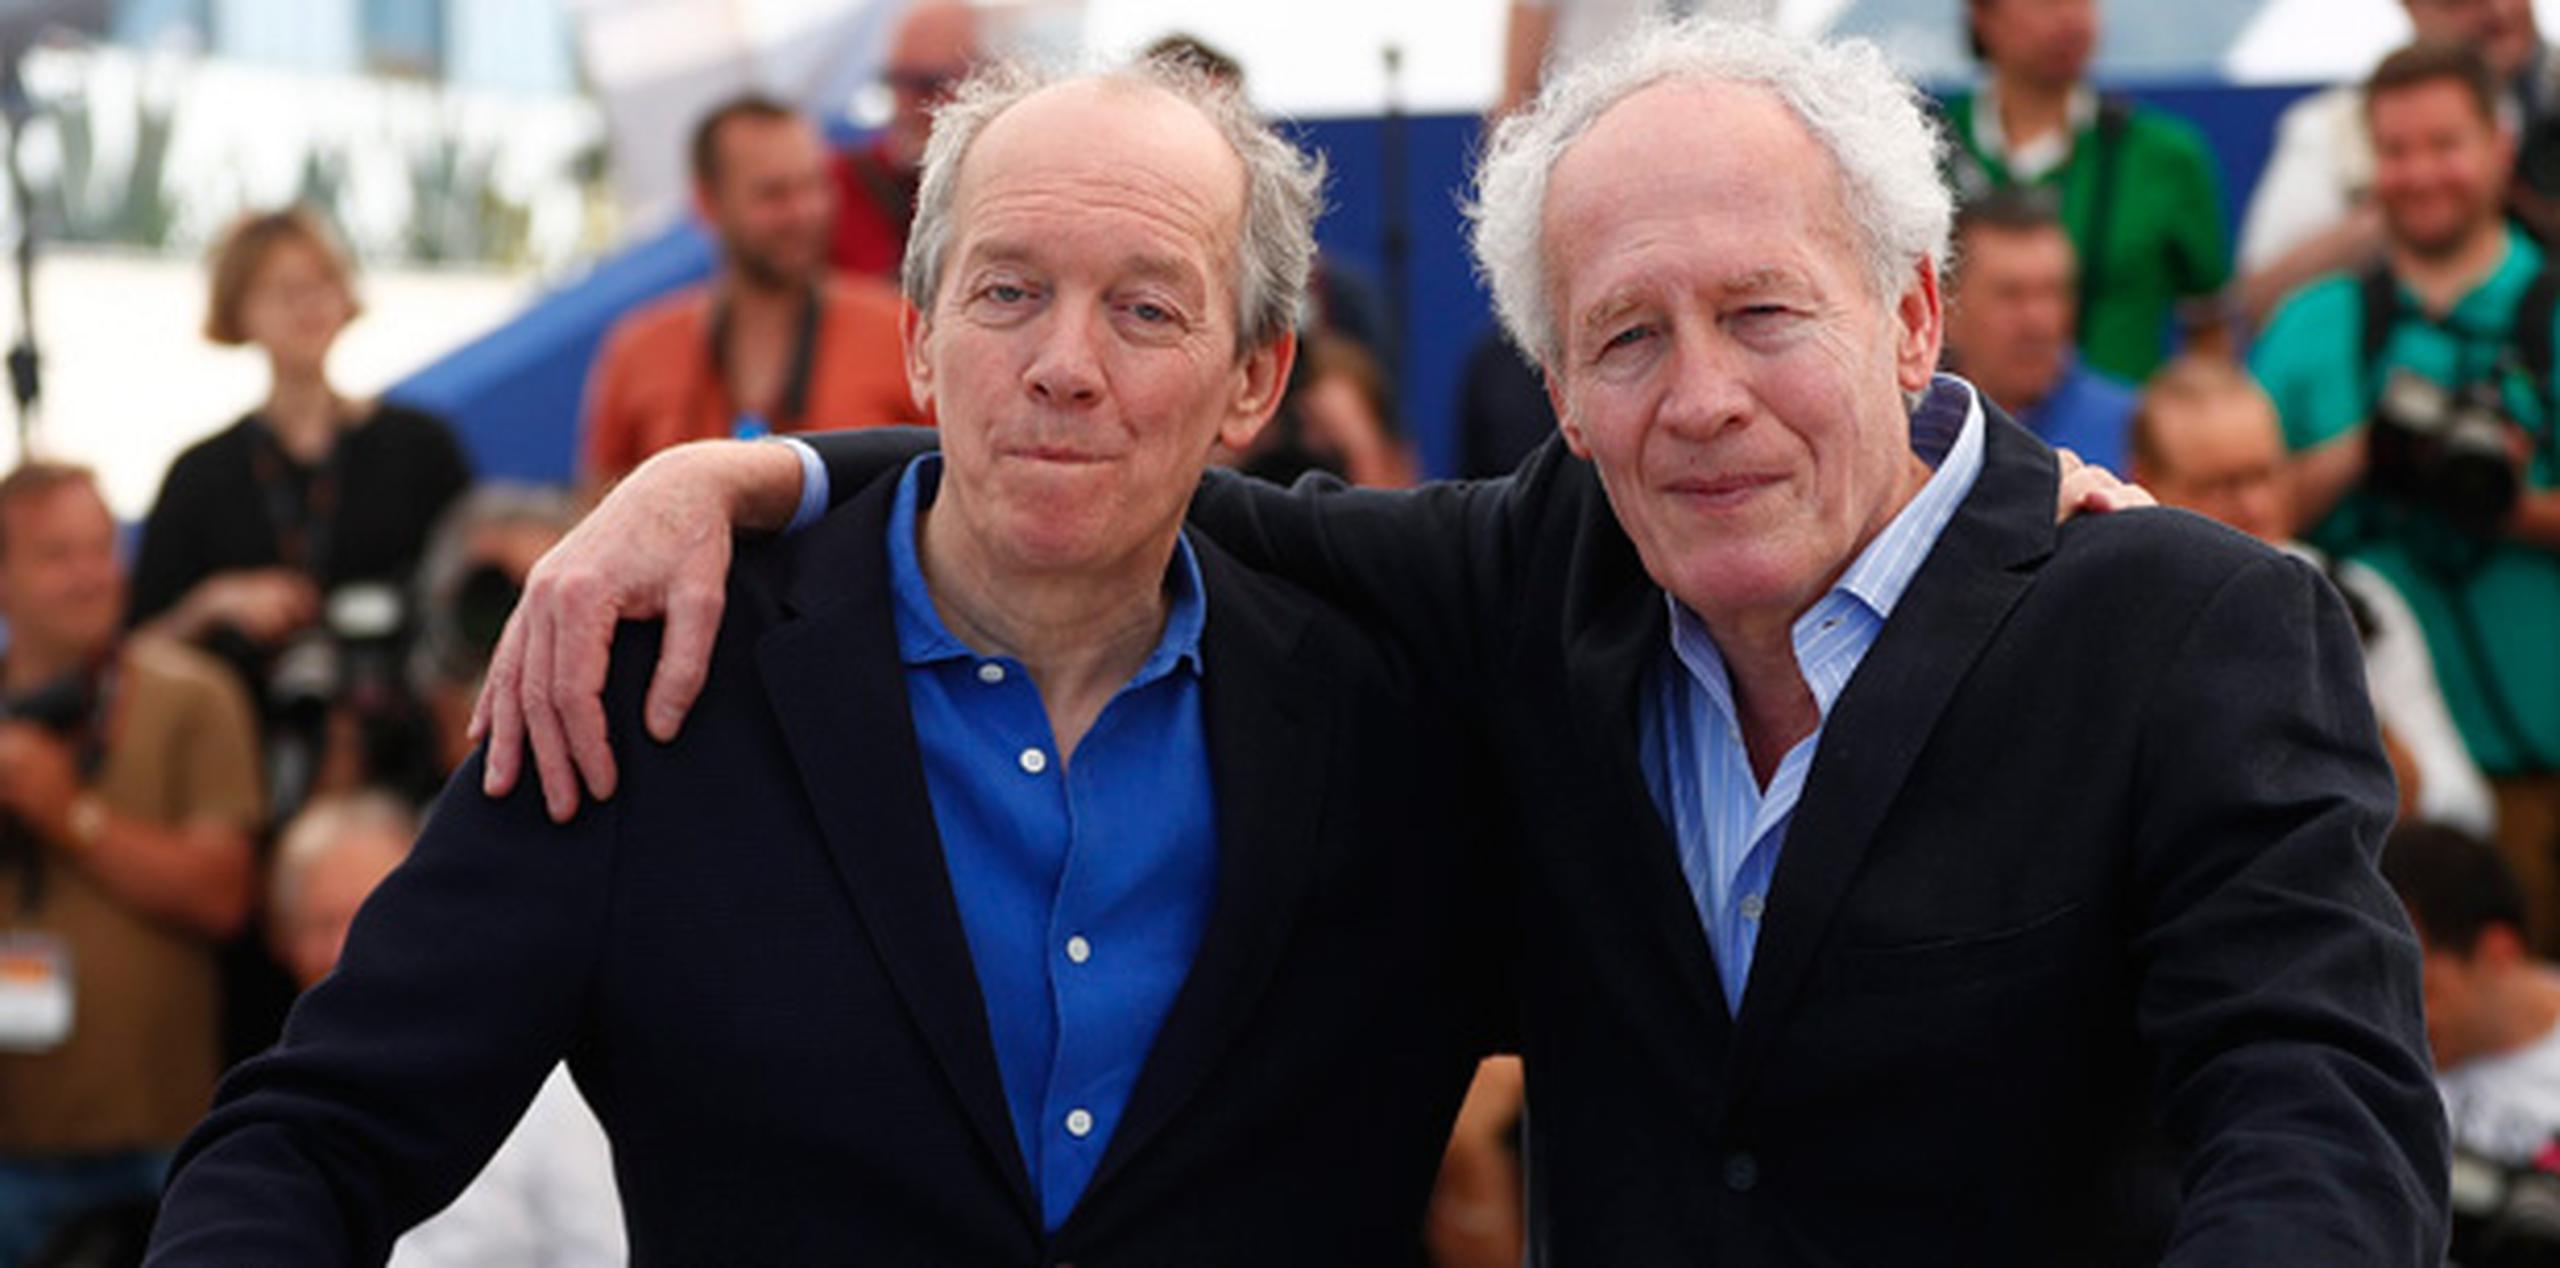 Los directores belgas Luc y Jean-Pierre Dardenne posan durante el pase gráfico de la película "La Fille Inconnue" en la 69 edición del Festival de cine Internacional de Cannes. (EFE)